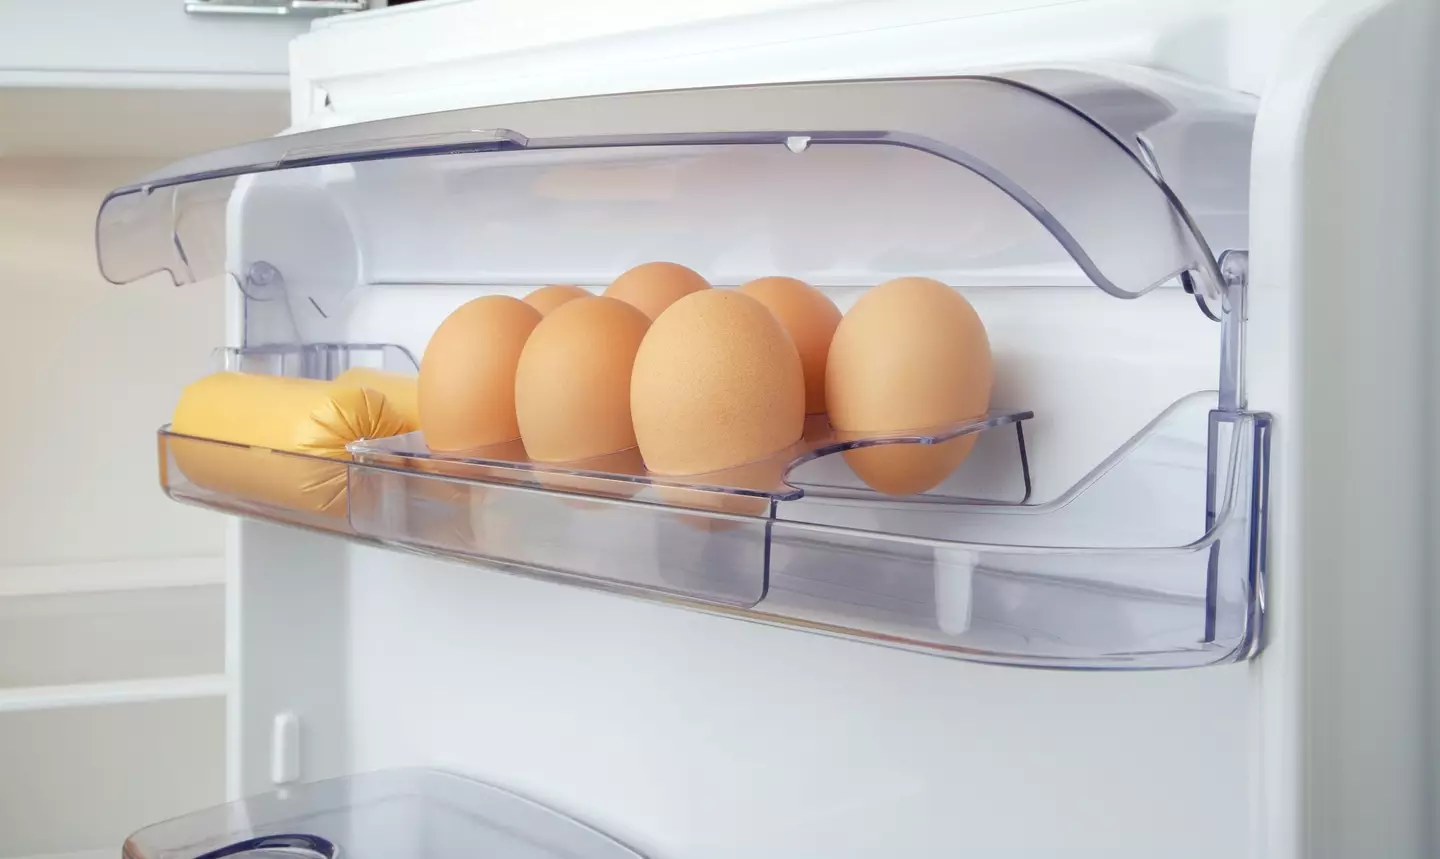 Eggs should be kept at a consistent temperature.